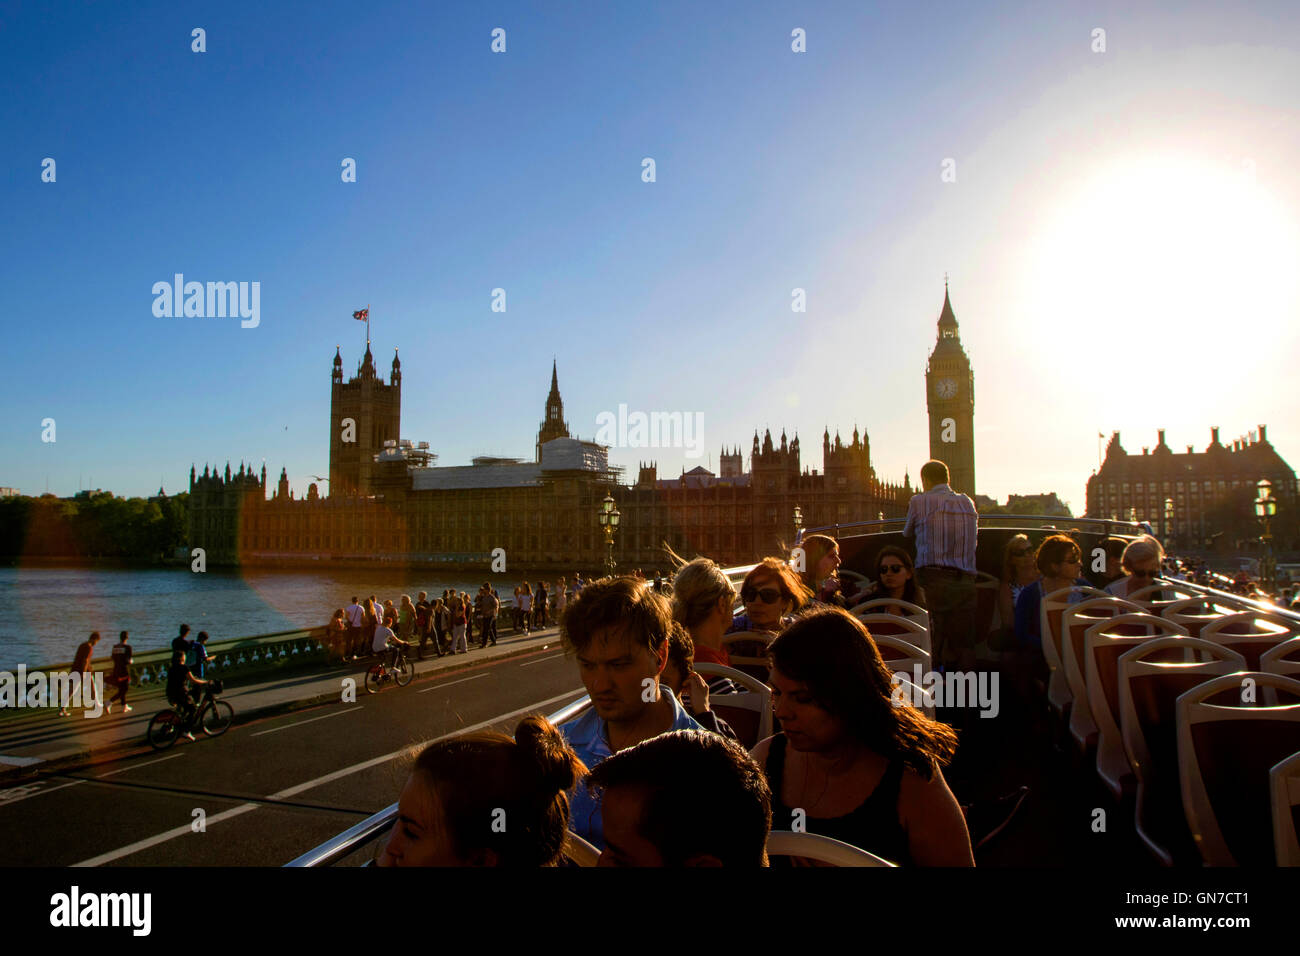 Touristen im offenen Bus Blick auf Big Ben am Nordende des Palace of Westminster in London im Sommer bei blauem Himmel Stockfoto